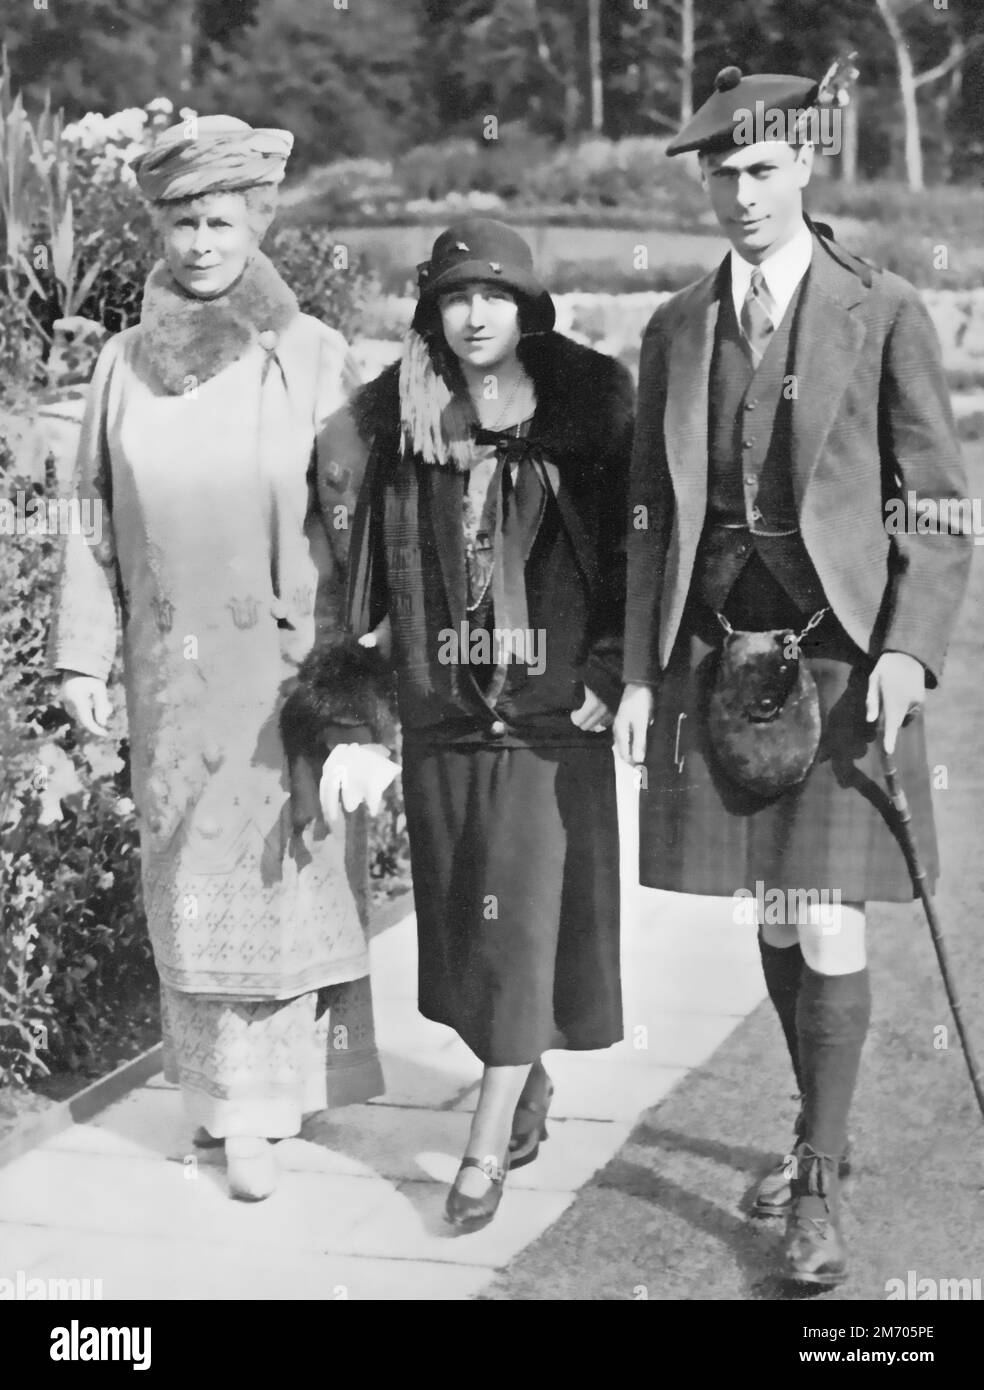 Queen Mary avec le duc et la duchesse de York à Balmoral, Écosse, 1924. La reine Mary (1867-1953) avec le futur roi George VI (1895-1952) et la reine Elizabeth (1900-2002). Le château de Balmoral, Aberdeenshire, en Écosse, est une résidence de la famille royale britannique. Banque D'Images